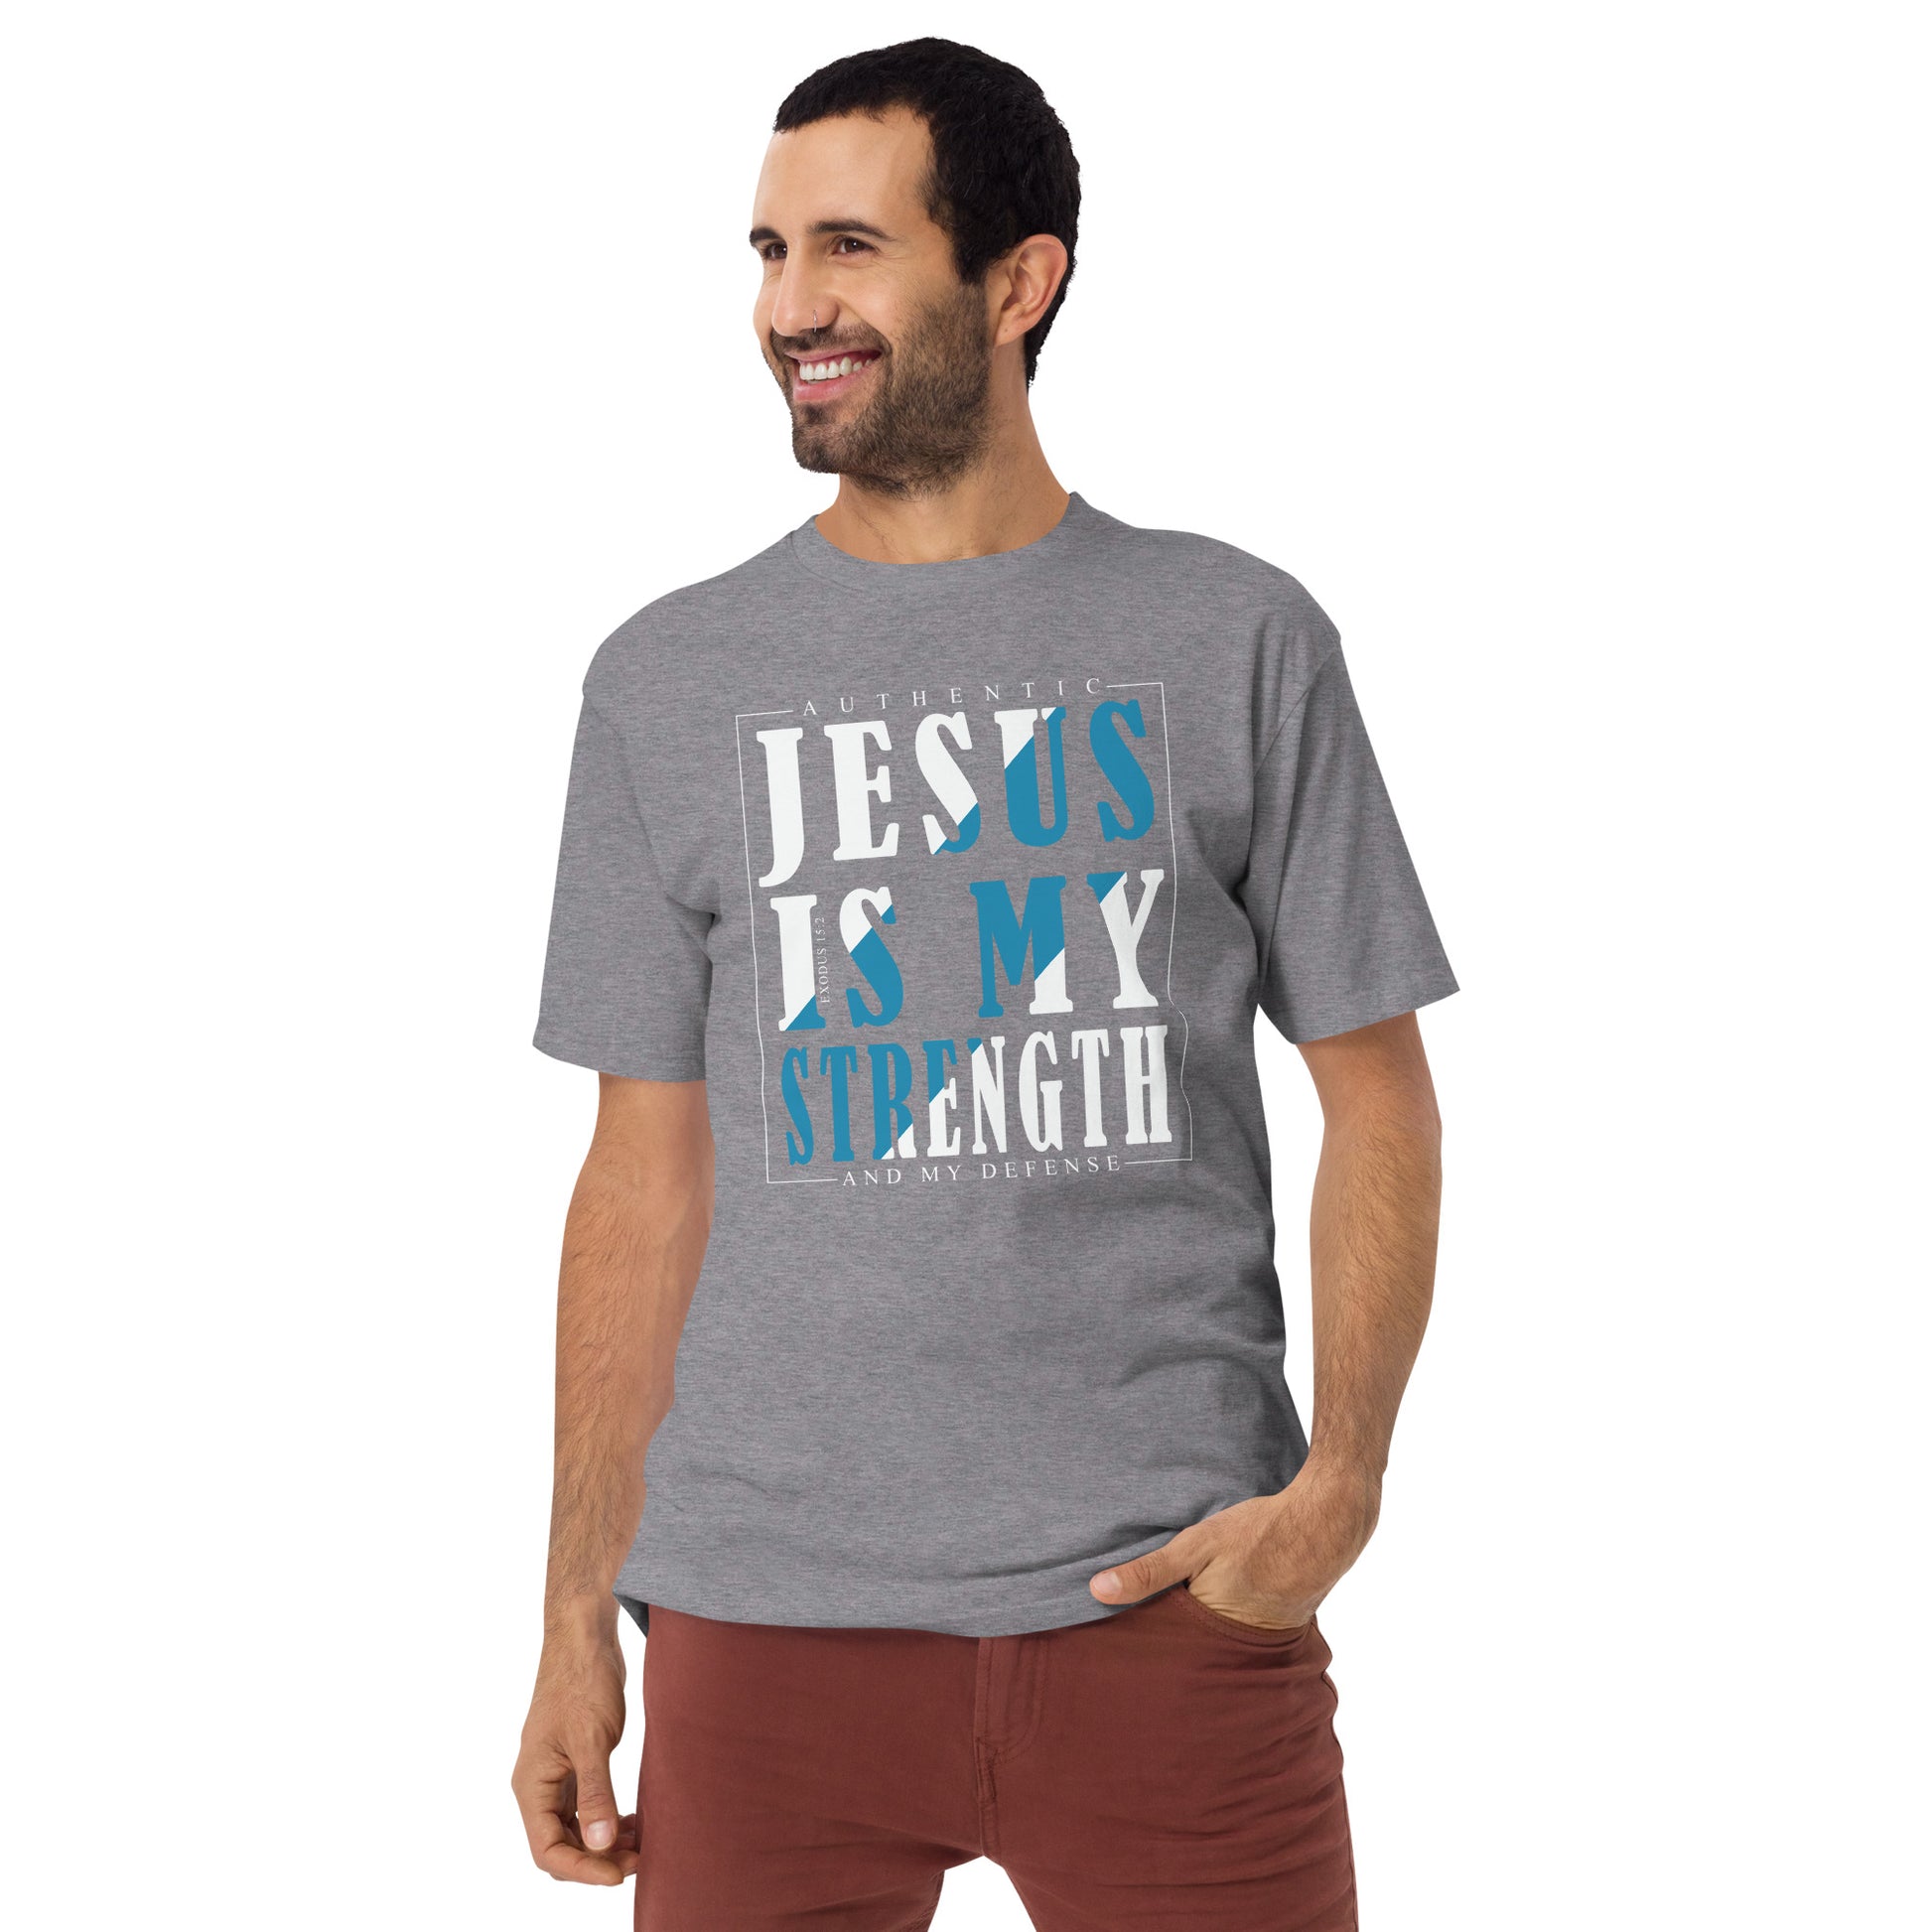 Christian "Jesus is My Strength" premium heavyweight t shirt